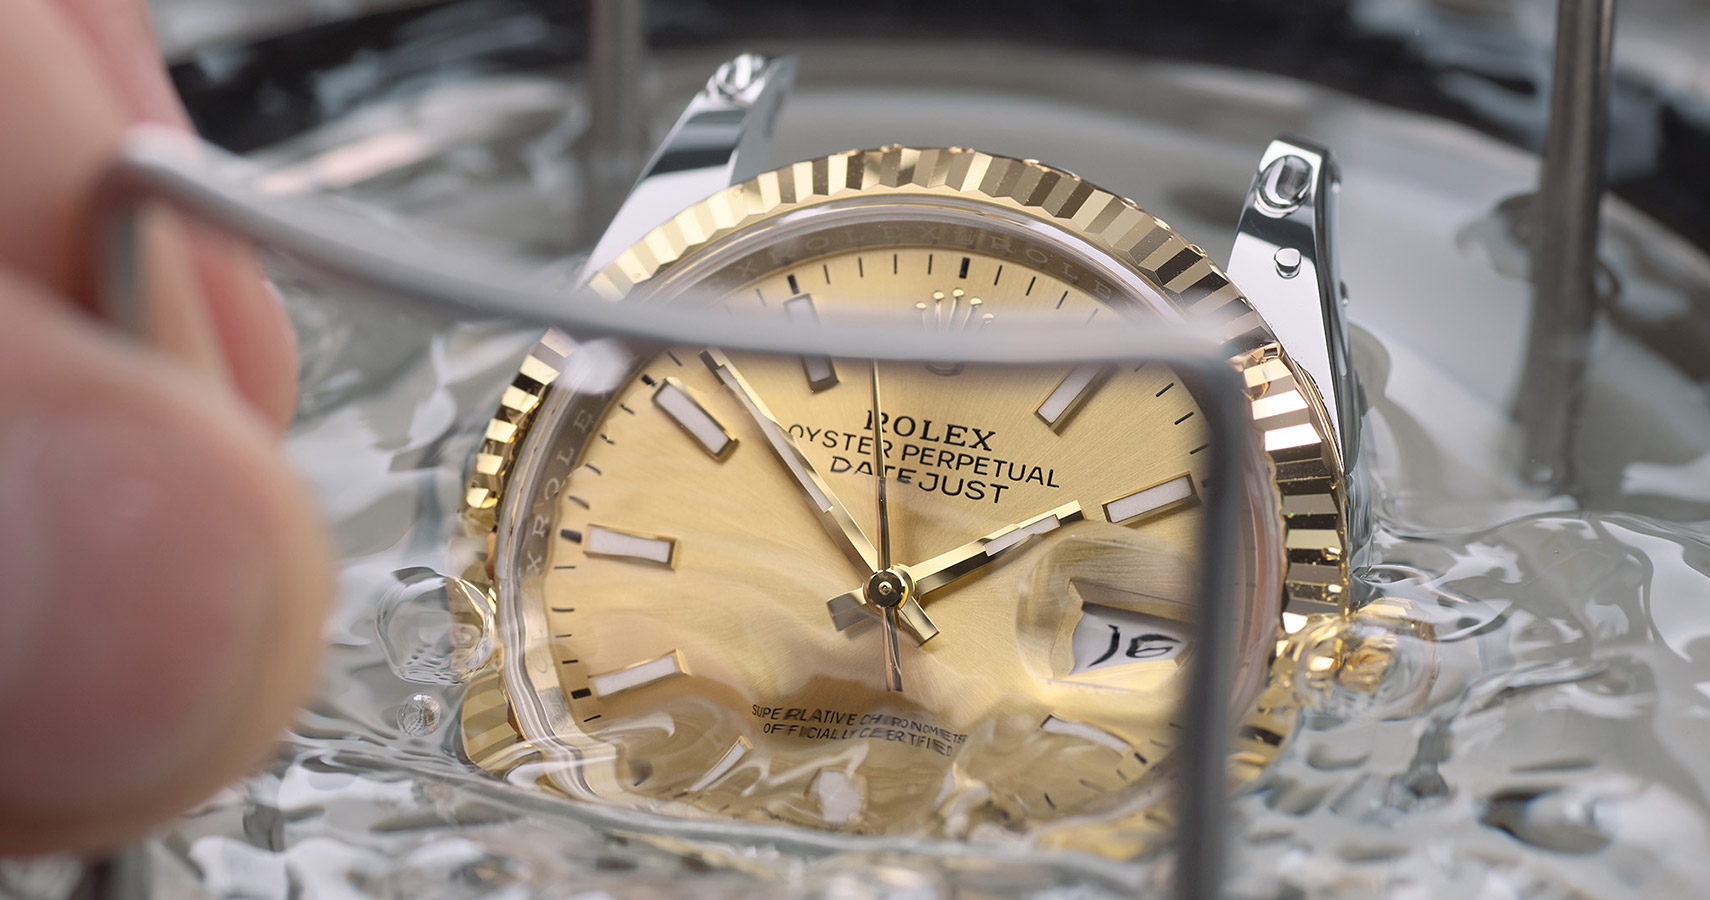 Eine Rolex Uhr ohne Armband wird auf Wasserdichtigkeit getestet und dafür in Behälter mit Wasser getaucht